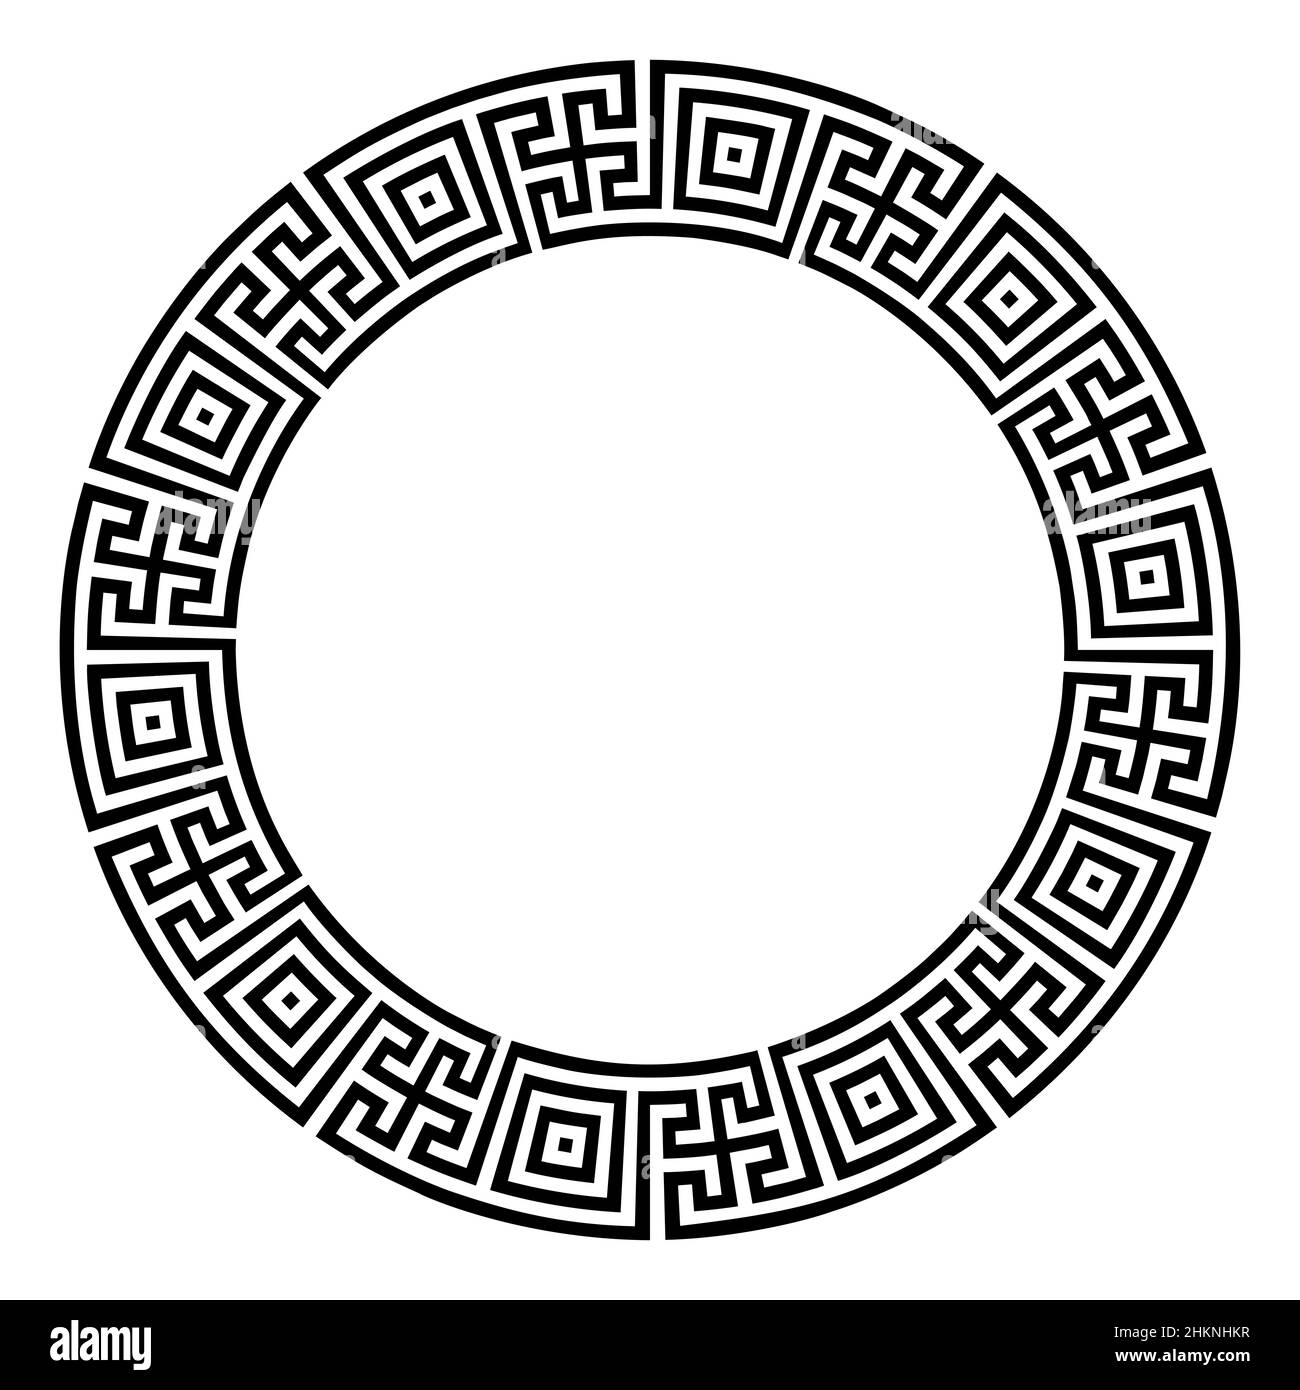 Double motif méandre, fait de carrés et de croix, un cadre circulaire et une bordure ronde décorative, fait de lignes, en forme de motif répété. Banque D'Images